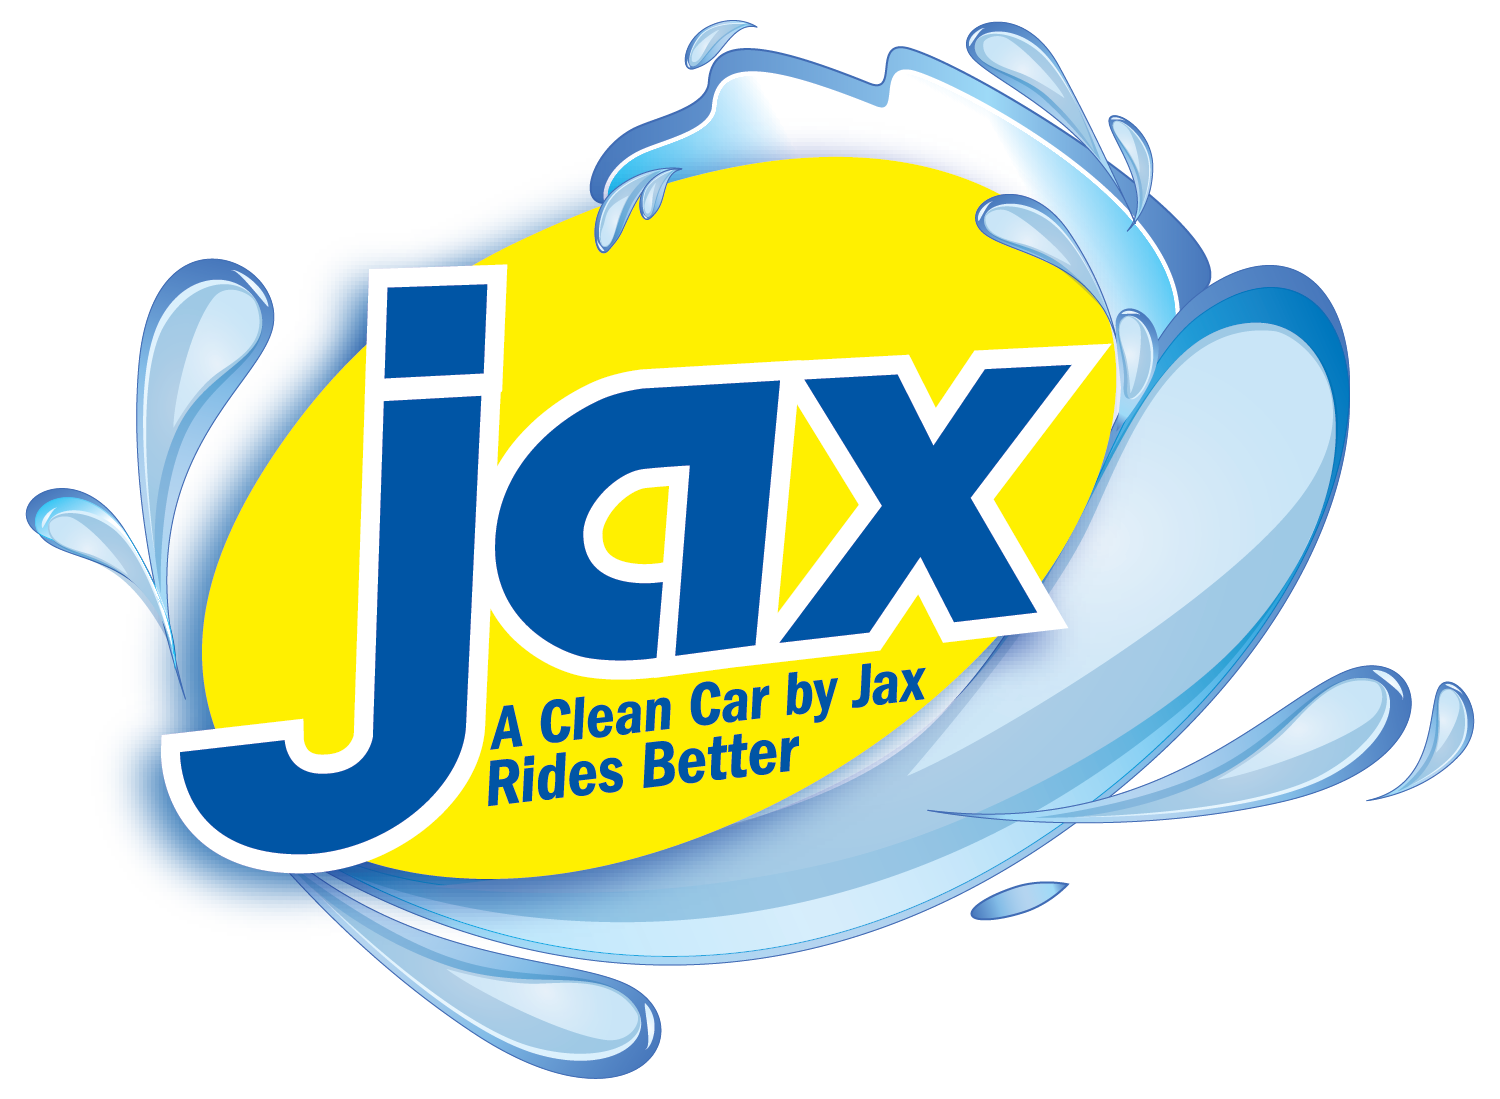 Jax Kar Wash